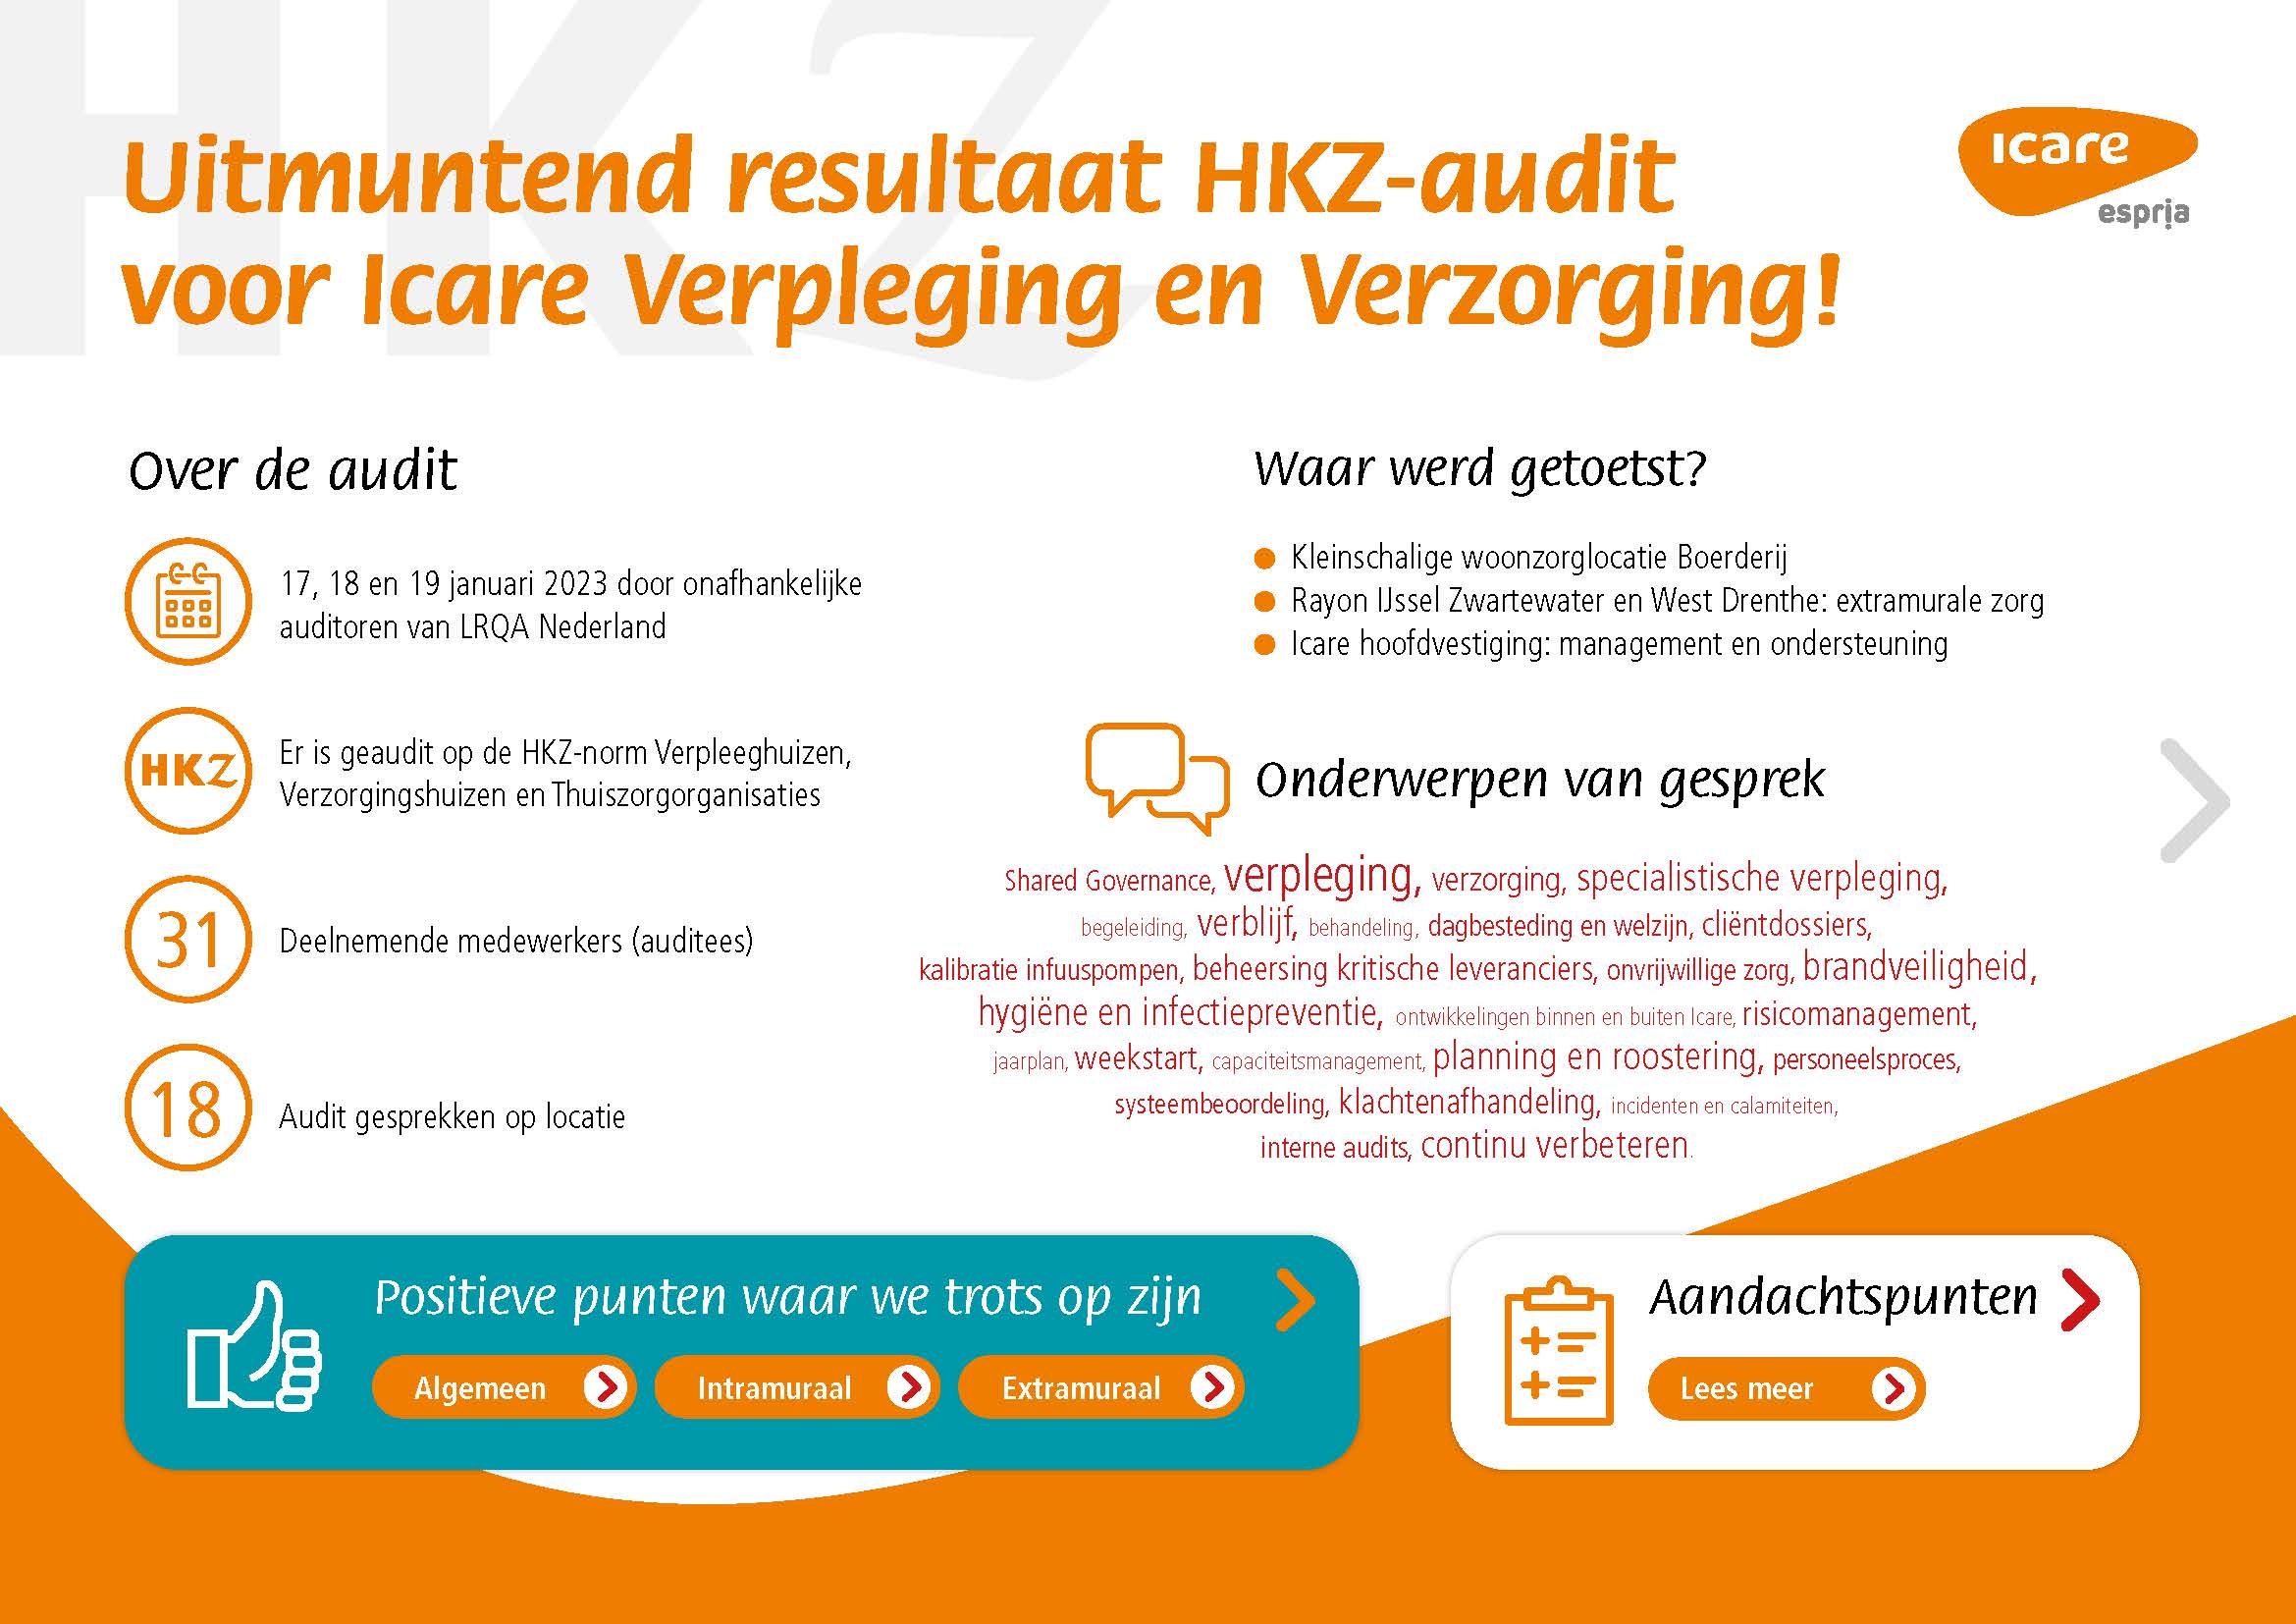 HKZ-audit